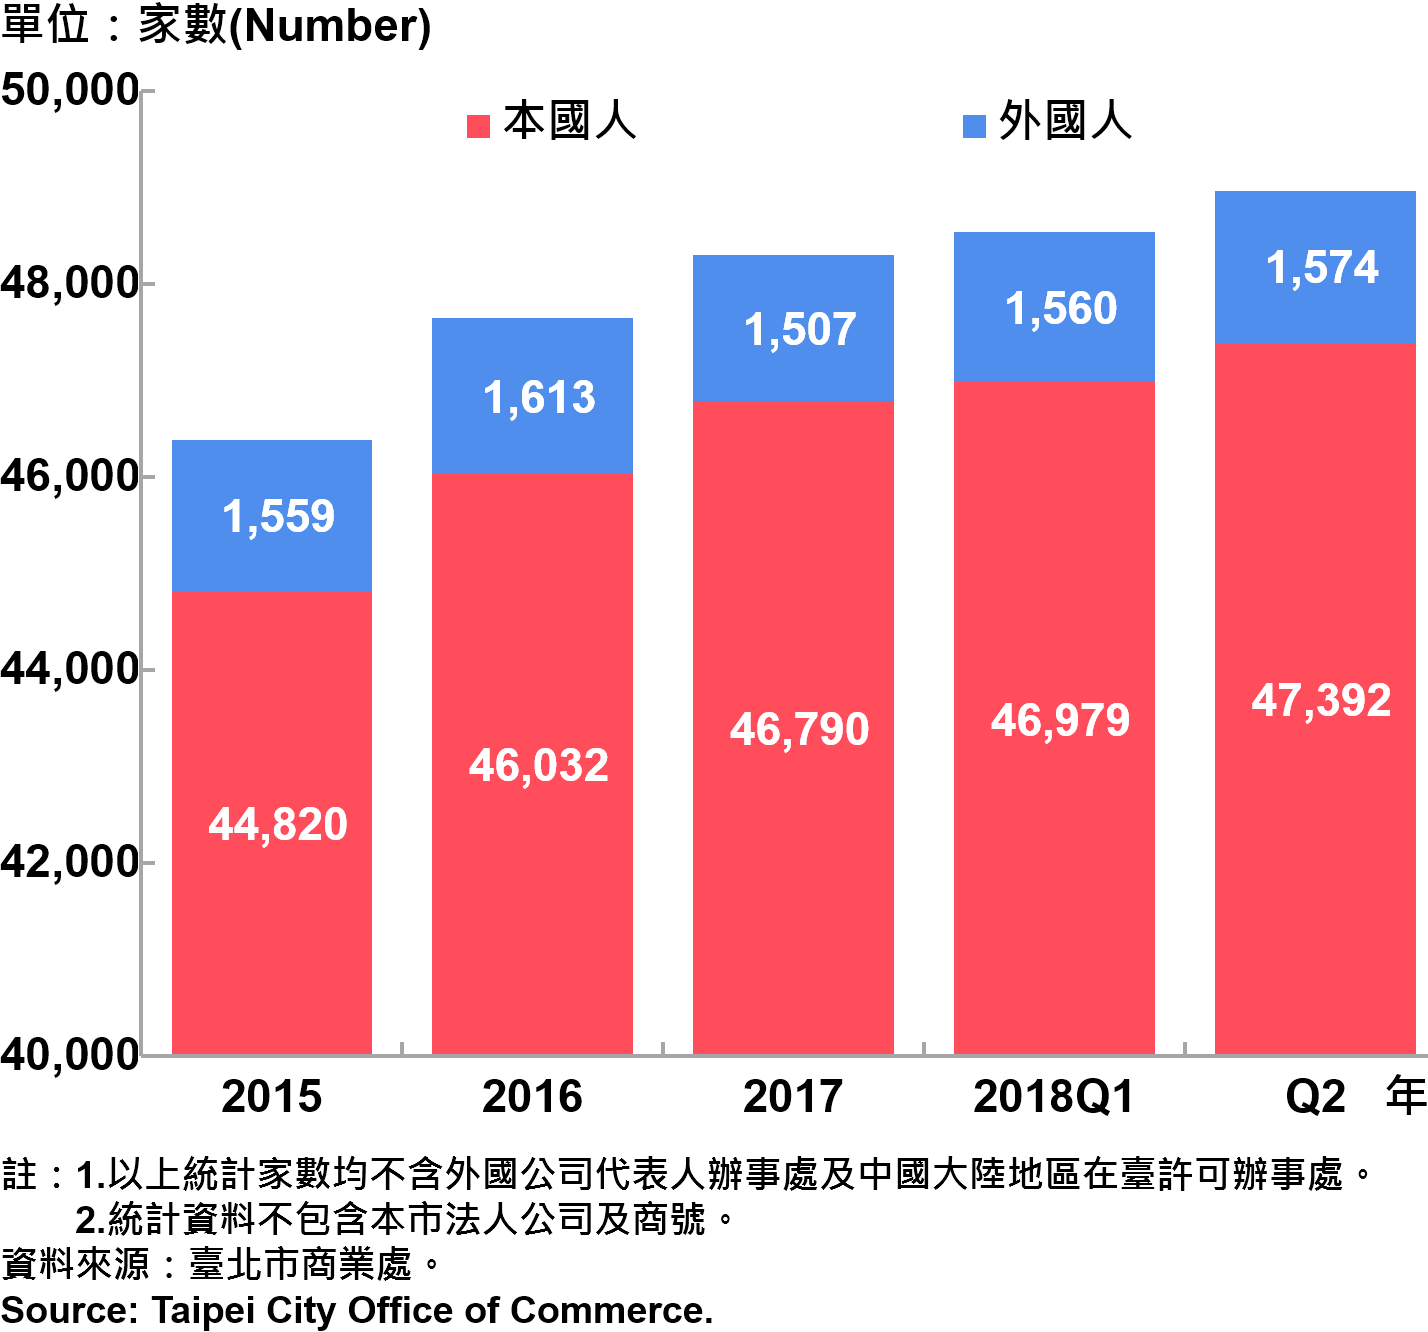 臺北市新創公司青創負責人為本國人與外國人分布情形—依現存家數—2018Q2 Responsible Person of Newly Registered Companies In Taipei City by Nationality - Number of Current —2018Q2